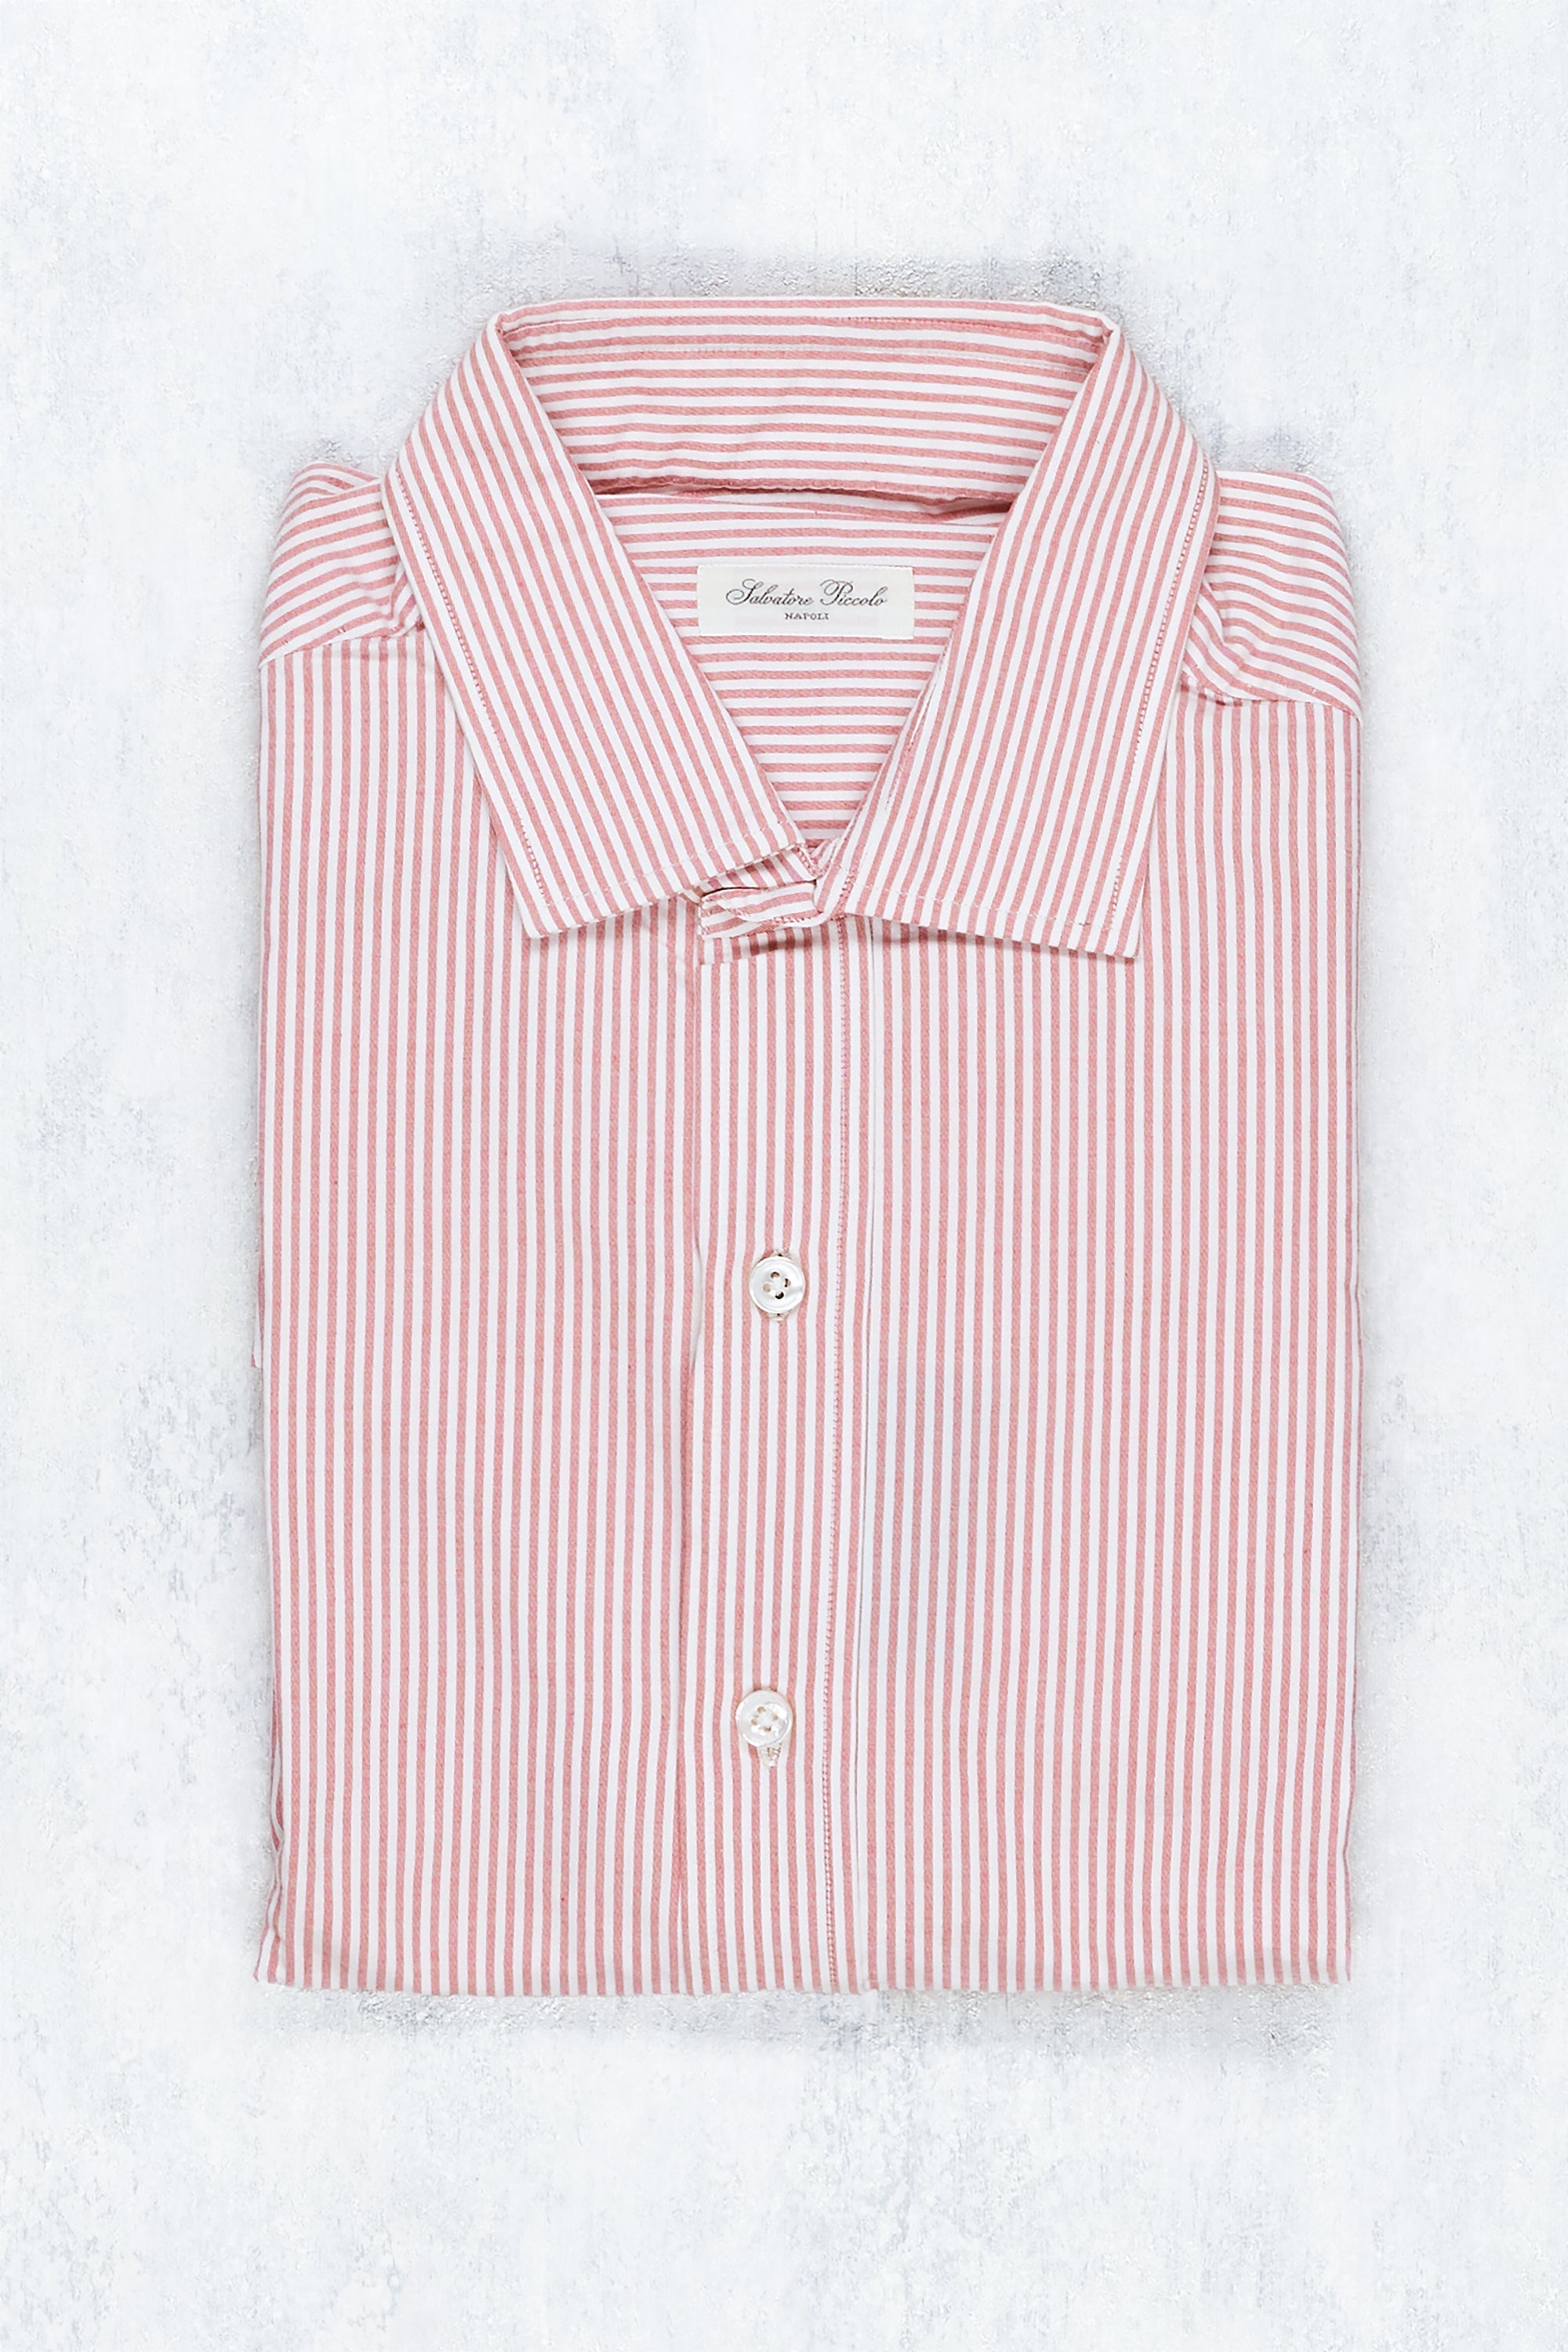 Salvatore Piccolo Red/White Stripe Cotton Spread Collar Shirt